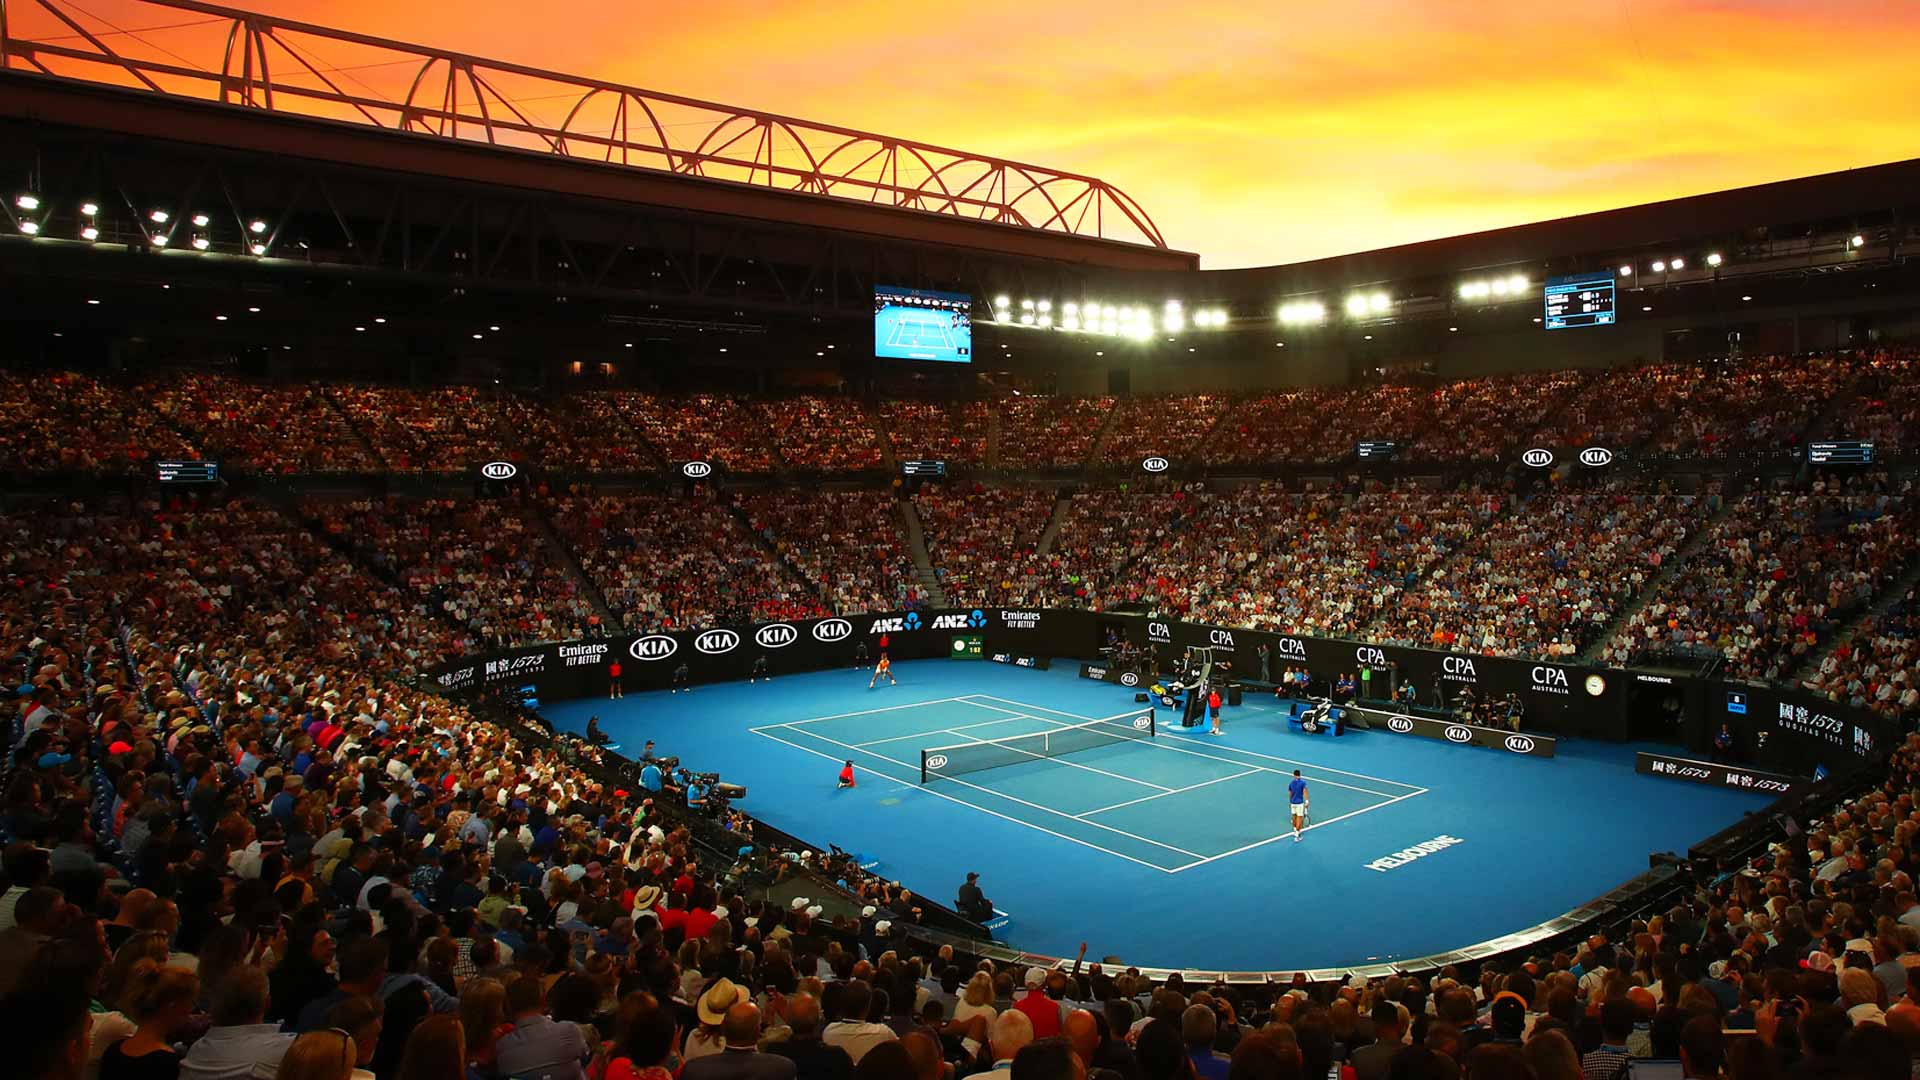 Australian Open Wallpapers - Top Free Australian Open Backgrounds ...